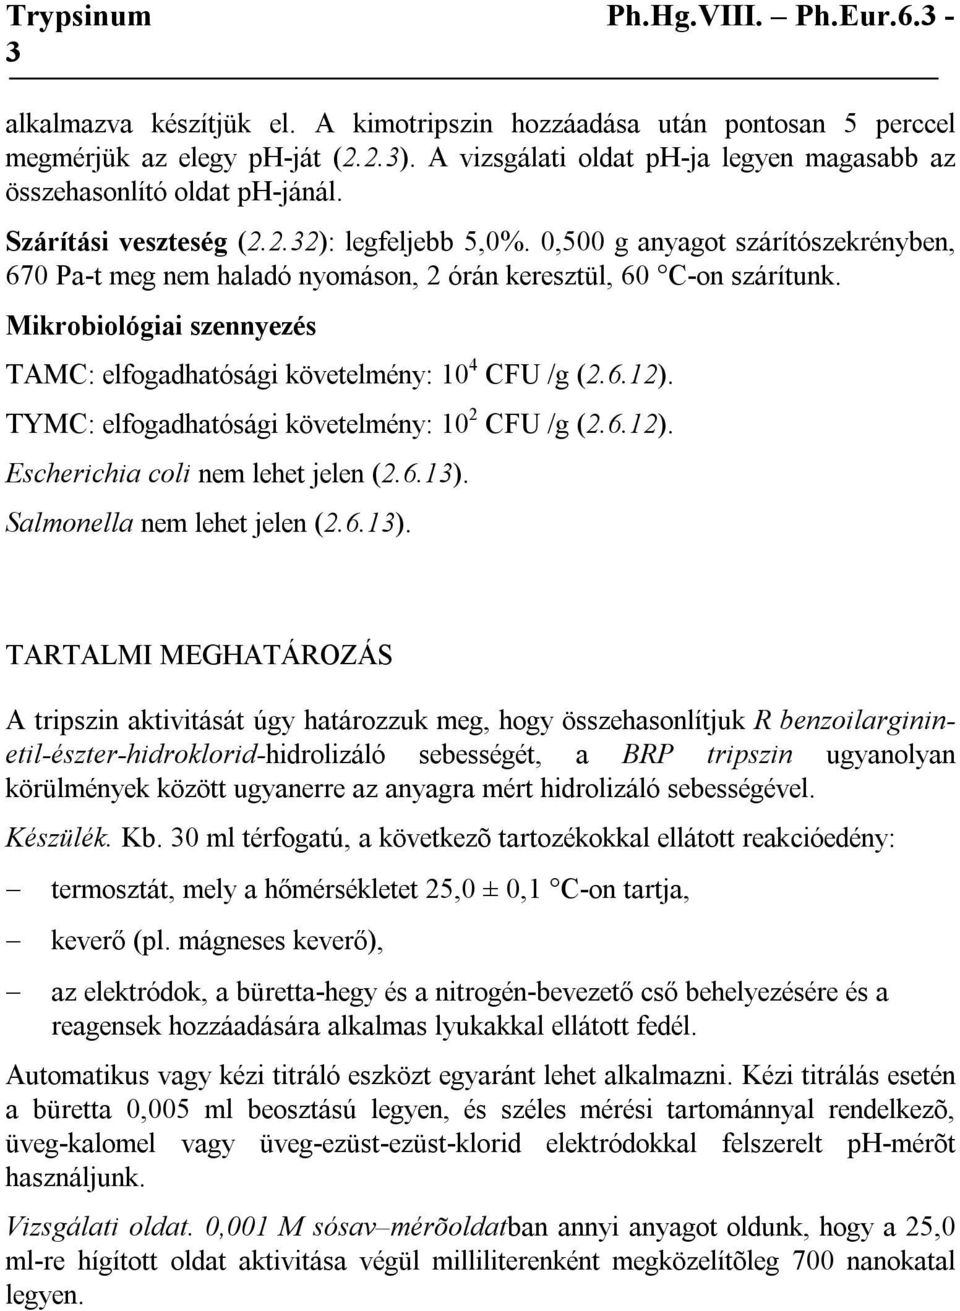 Mikrobiológiai szennyezés TAMC: elfogadhatósági követelmény: 10 4 CFU /g (2.6.12). TYMC: elfogadhatósági követelmény: 10 2 CFU /g (2.6.12). Escherichia coli nem lehet jelen (2.6.13).